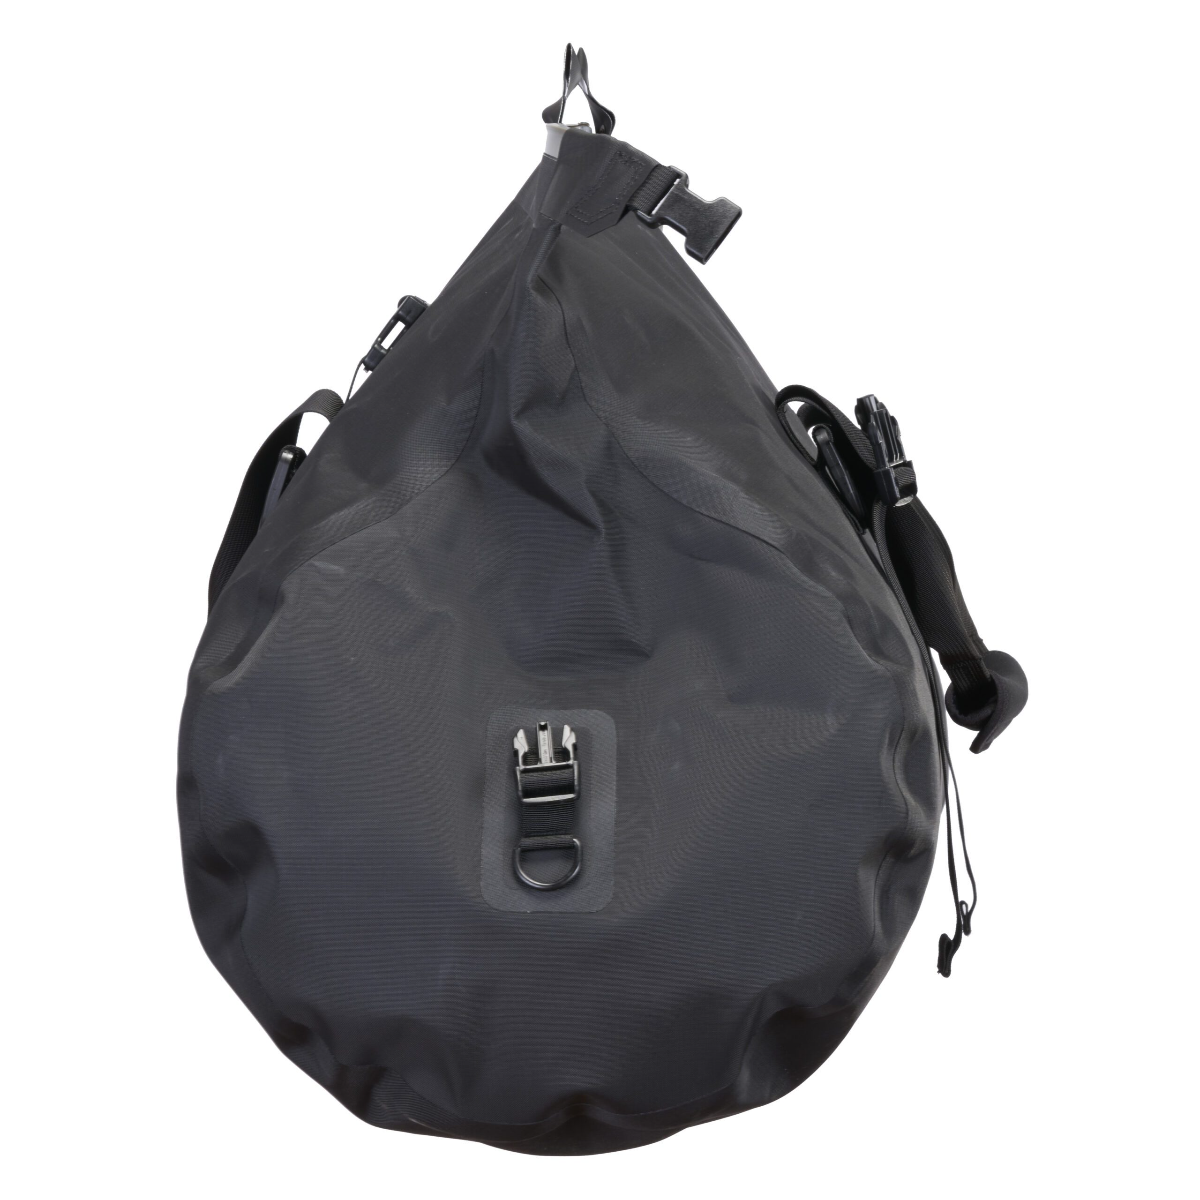 HealthdesignShops, Gbda3213 shoulder bag